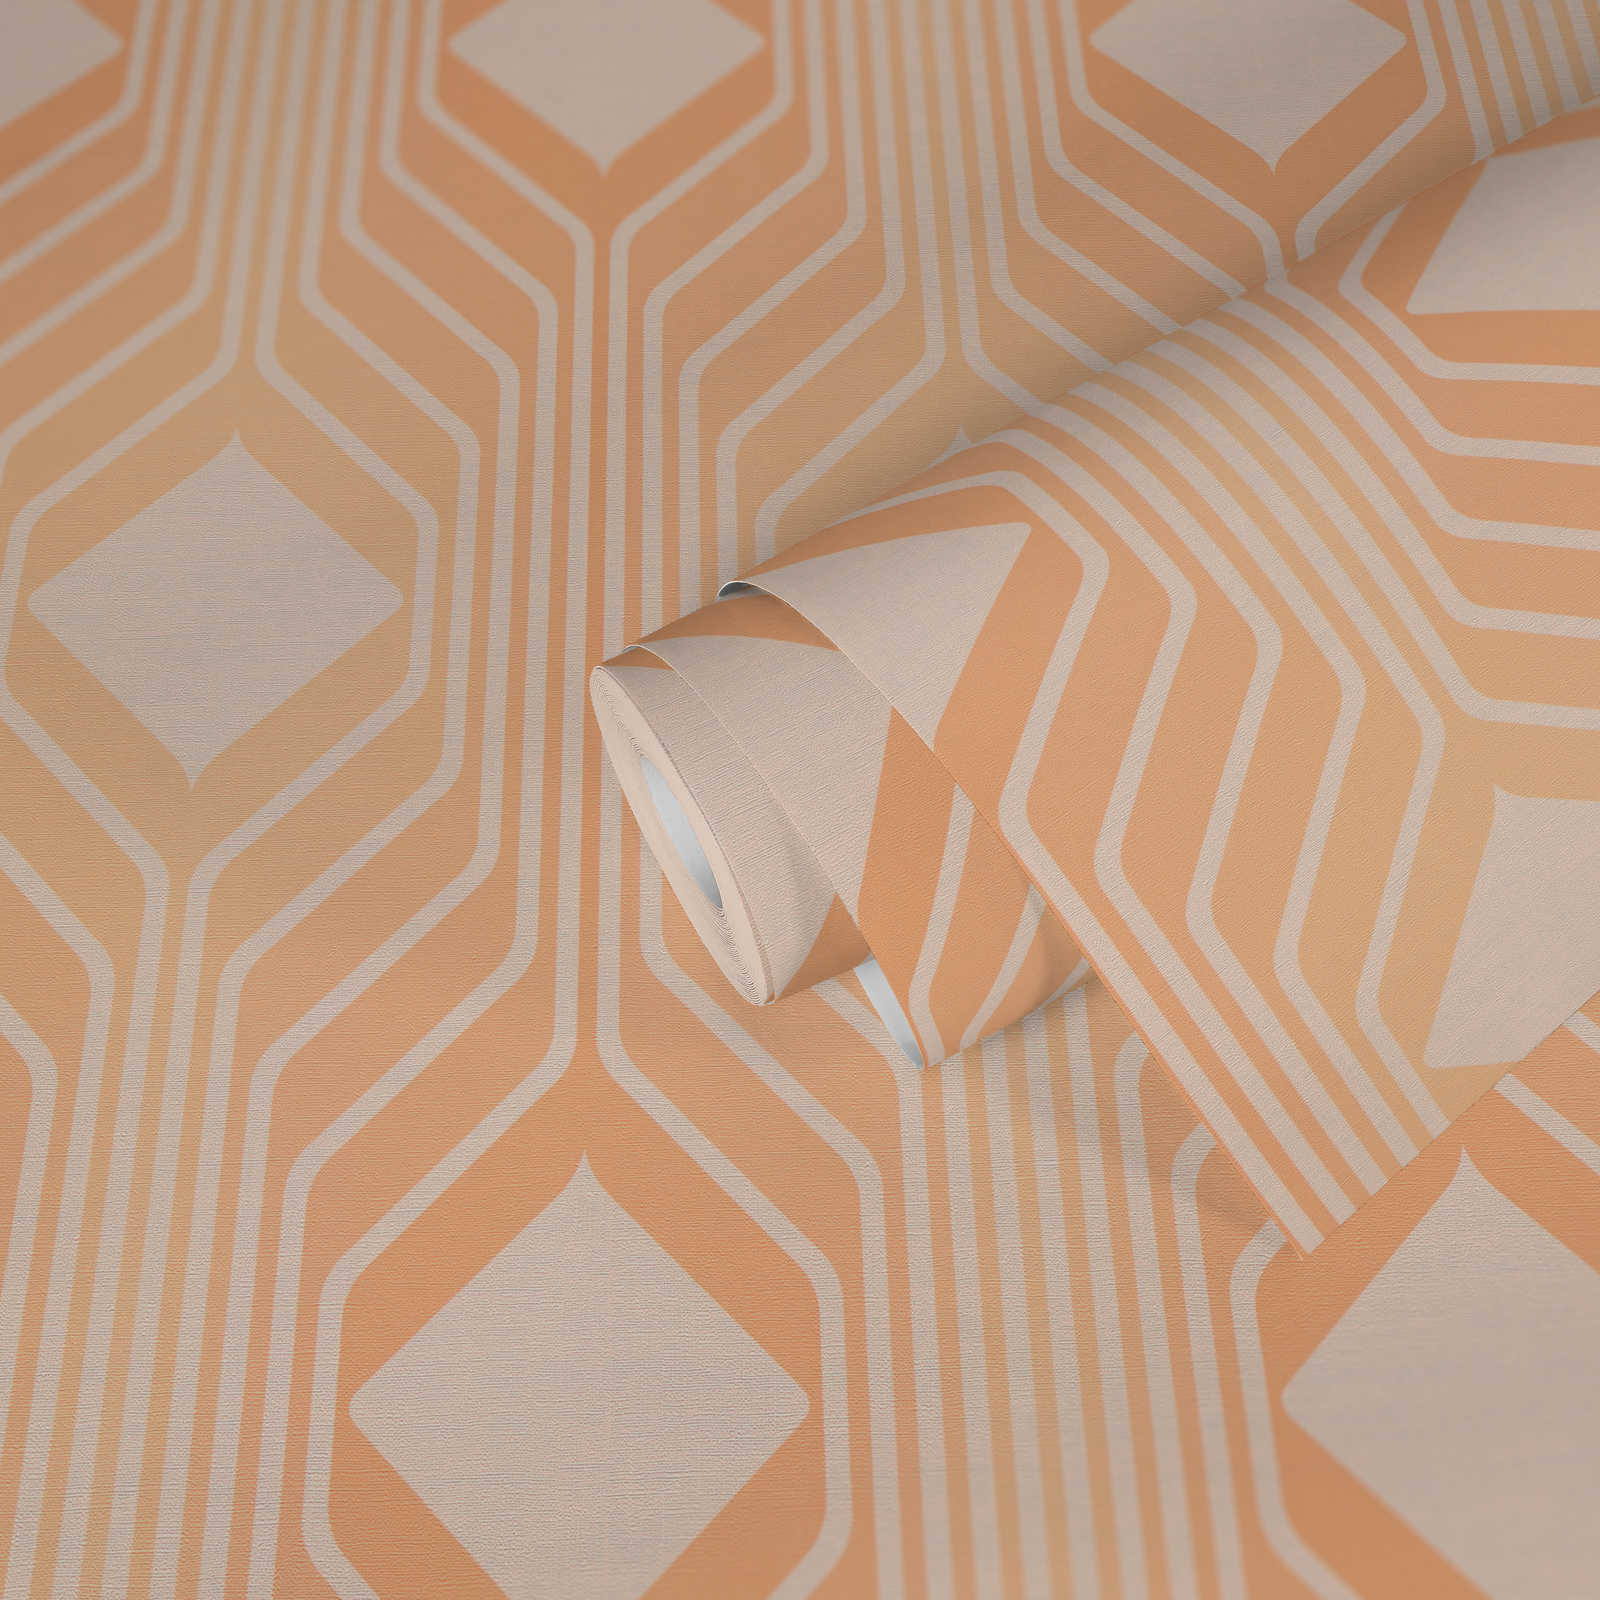             Retro behang met ruitpatroon in warme kleuren - oranje, beige
        